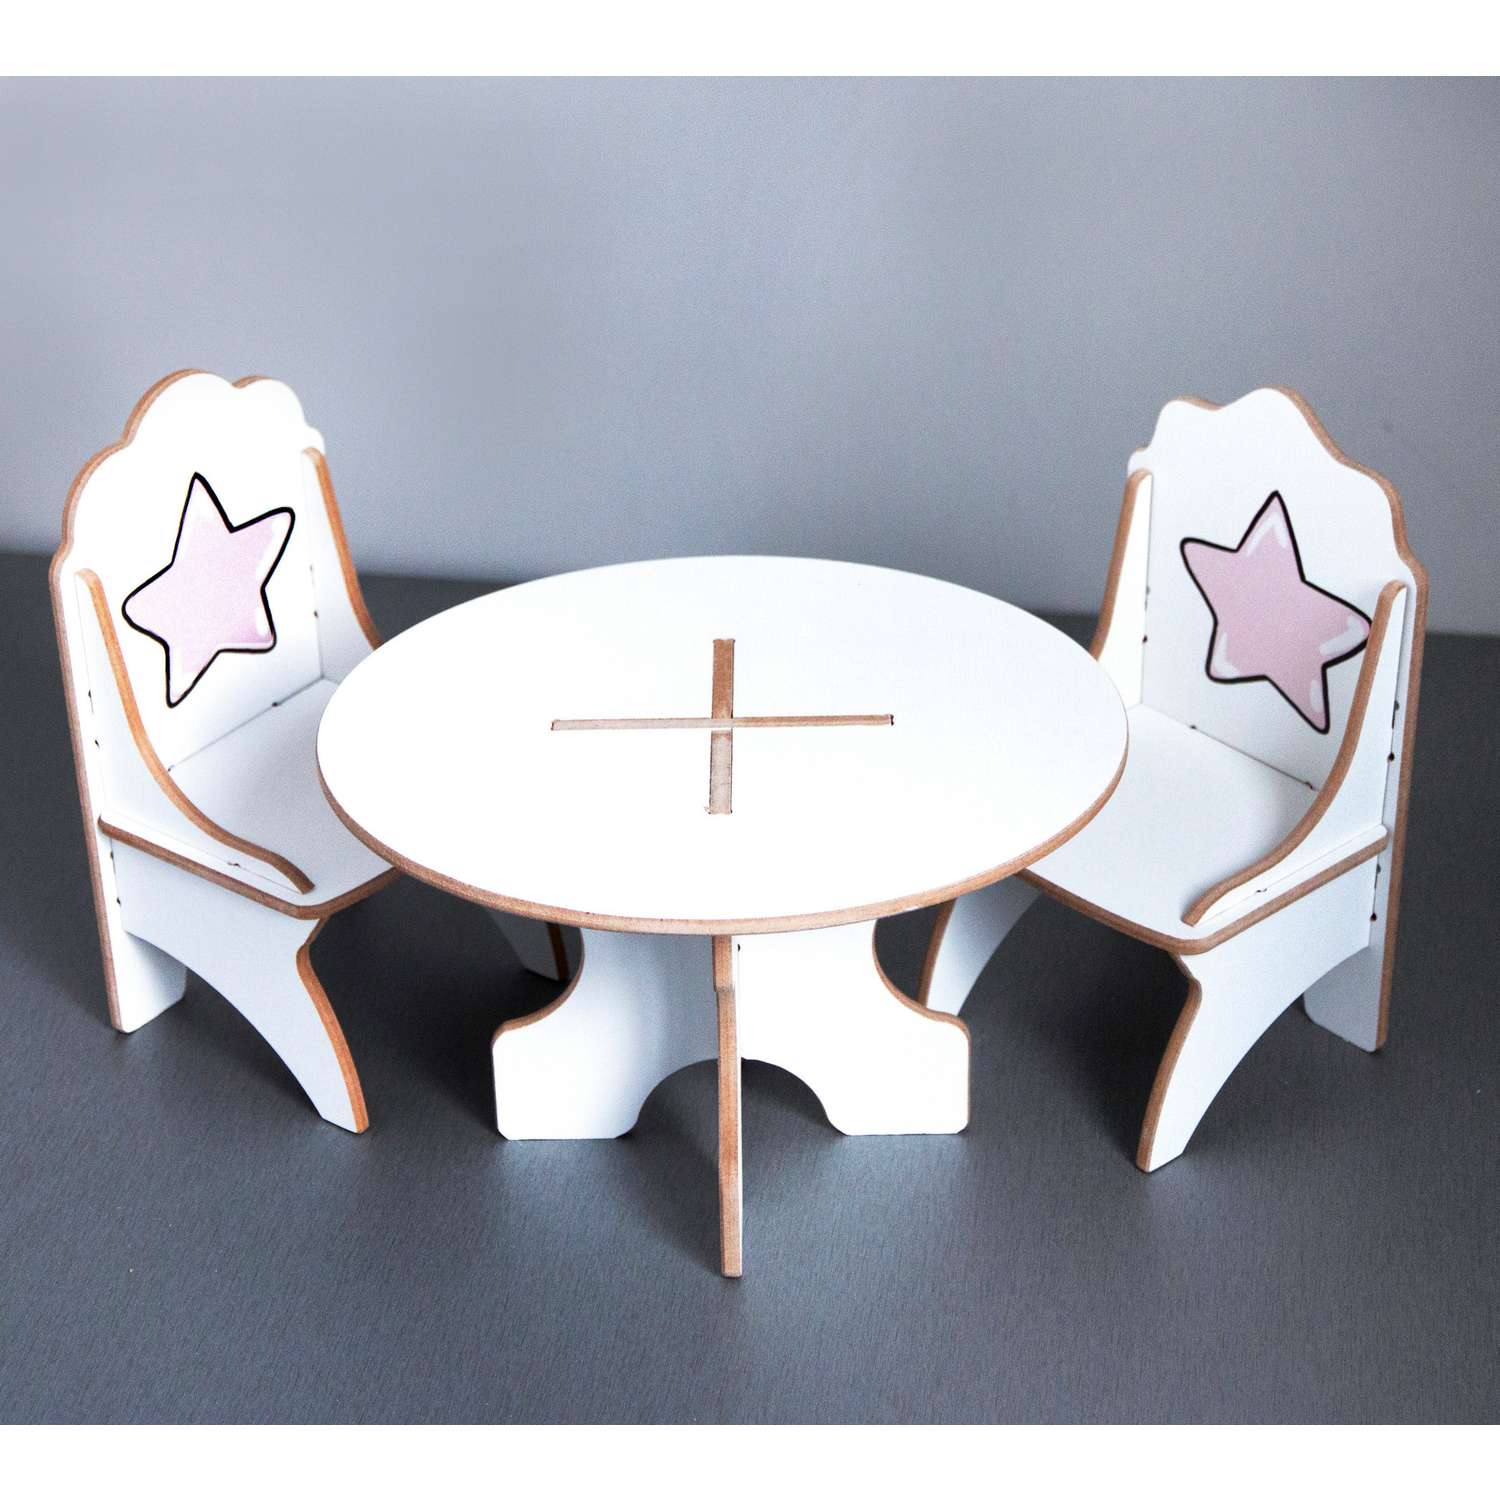 Кукольный набор мебели Alubalu Моня стол и 2 стула 21НМ49 - фото 1